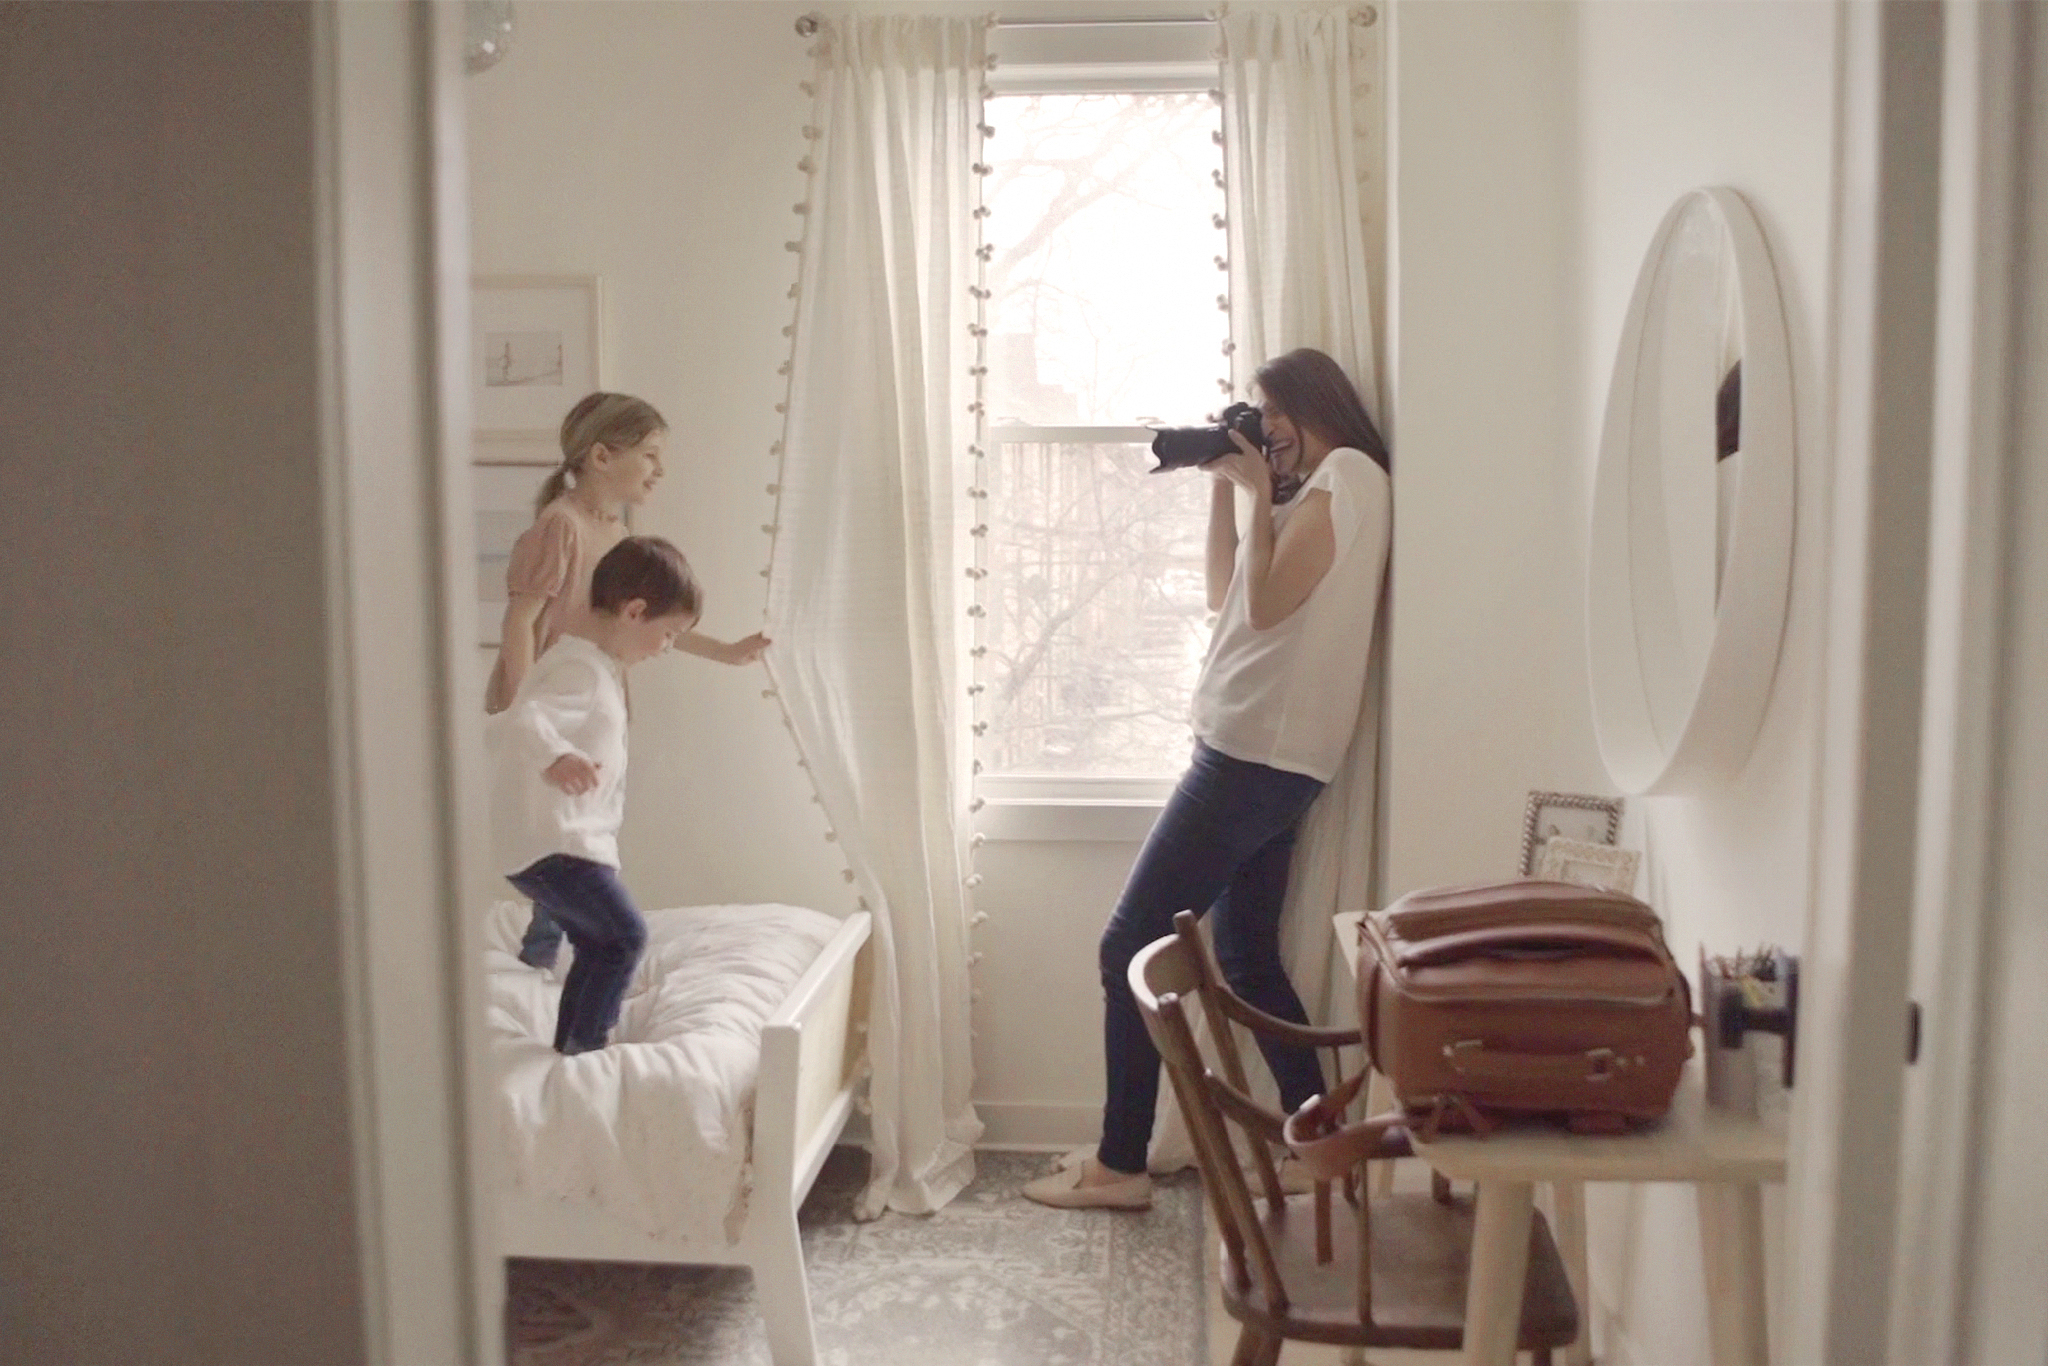 La photographe Kira Noel prend une photo de deux enfants dans une chambre à coucher.